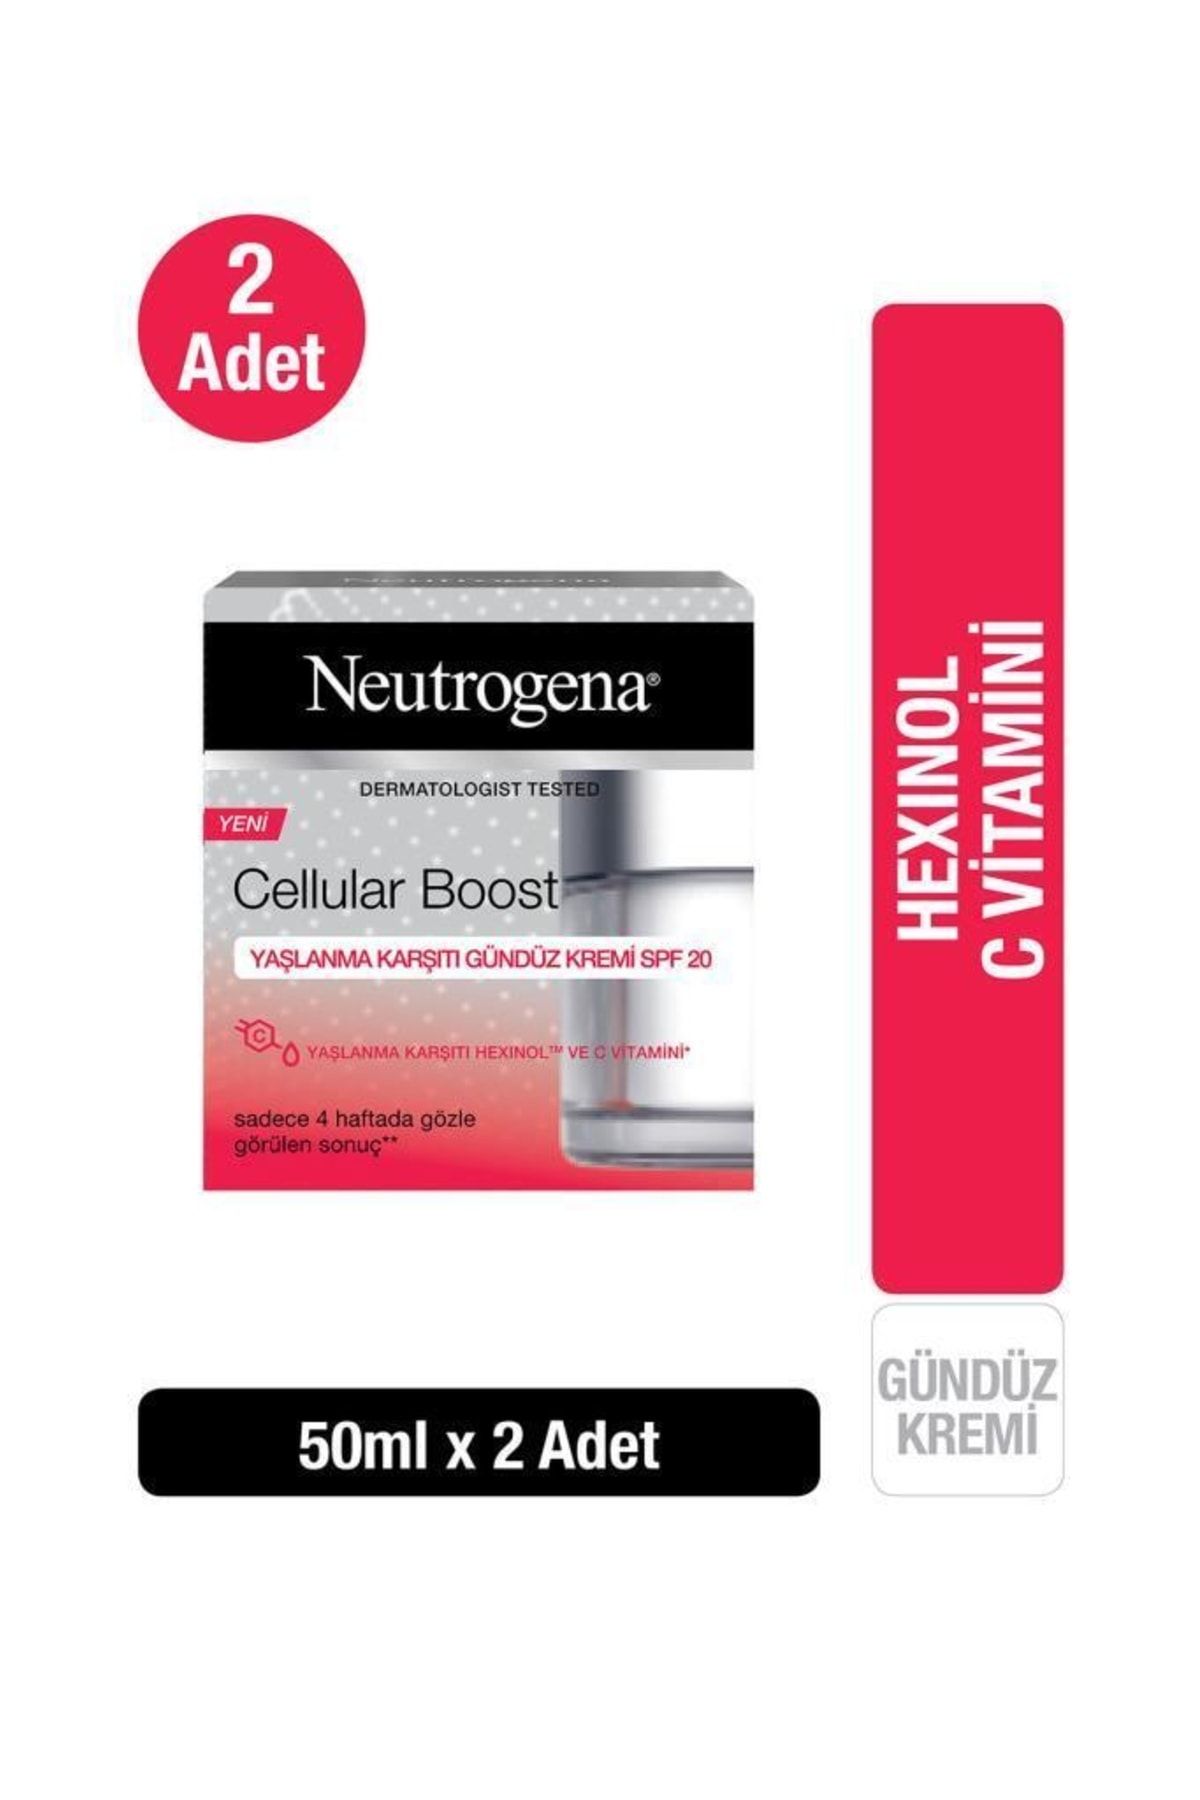 Neutrogena Cellular Boost Yaşlanma Karşıtı Gündüz Kremi Spf 20 50 ml X 2 Adet